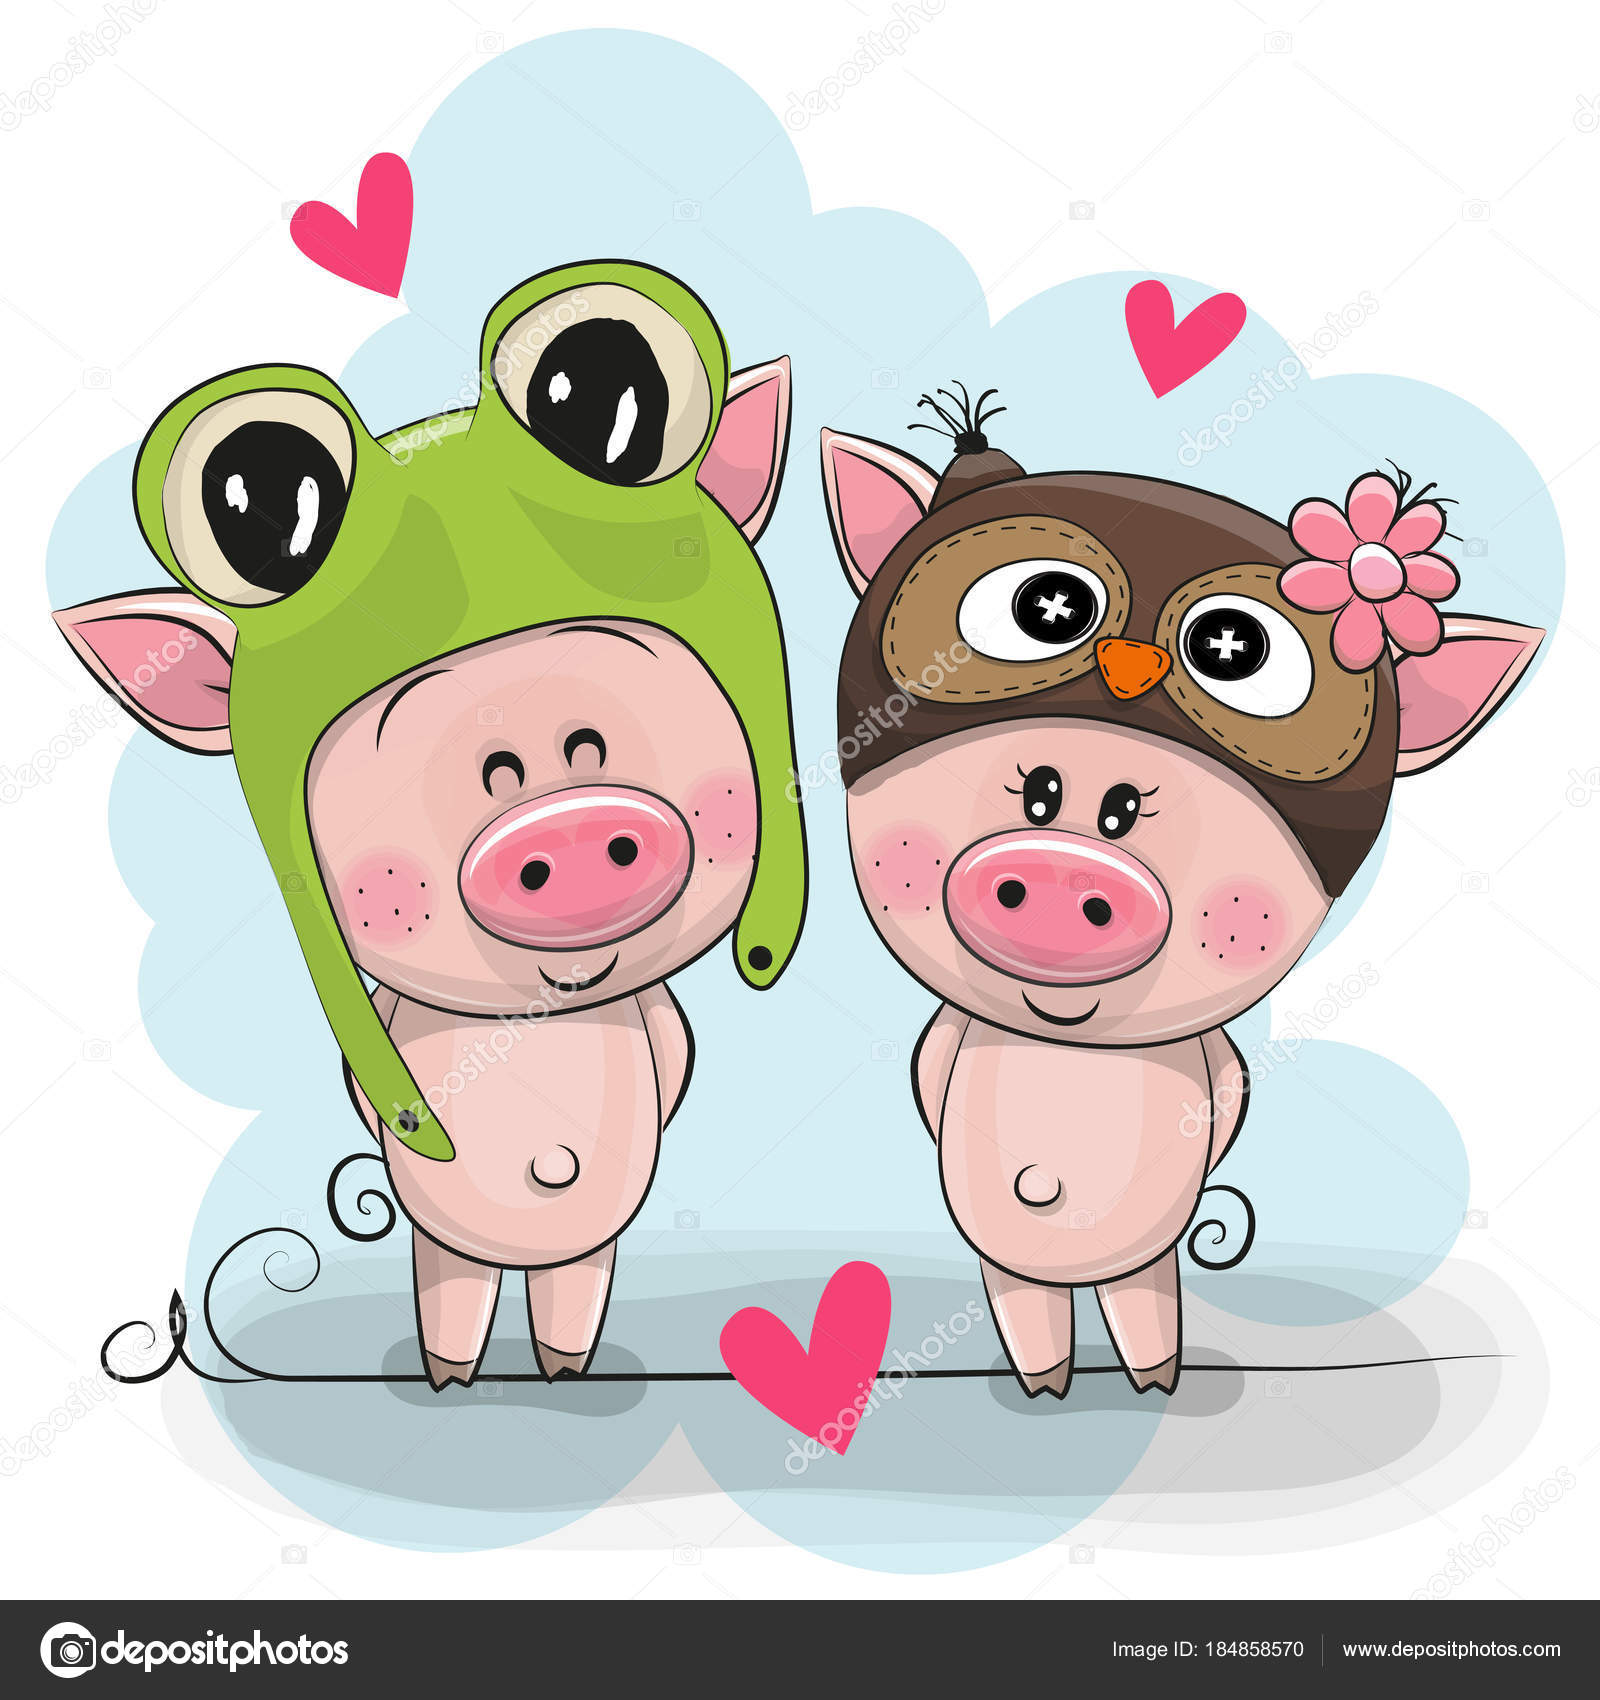 6,953 ilustraciones de stock de Baby pig | Depositphotos®